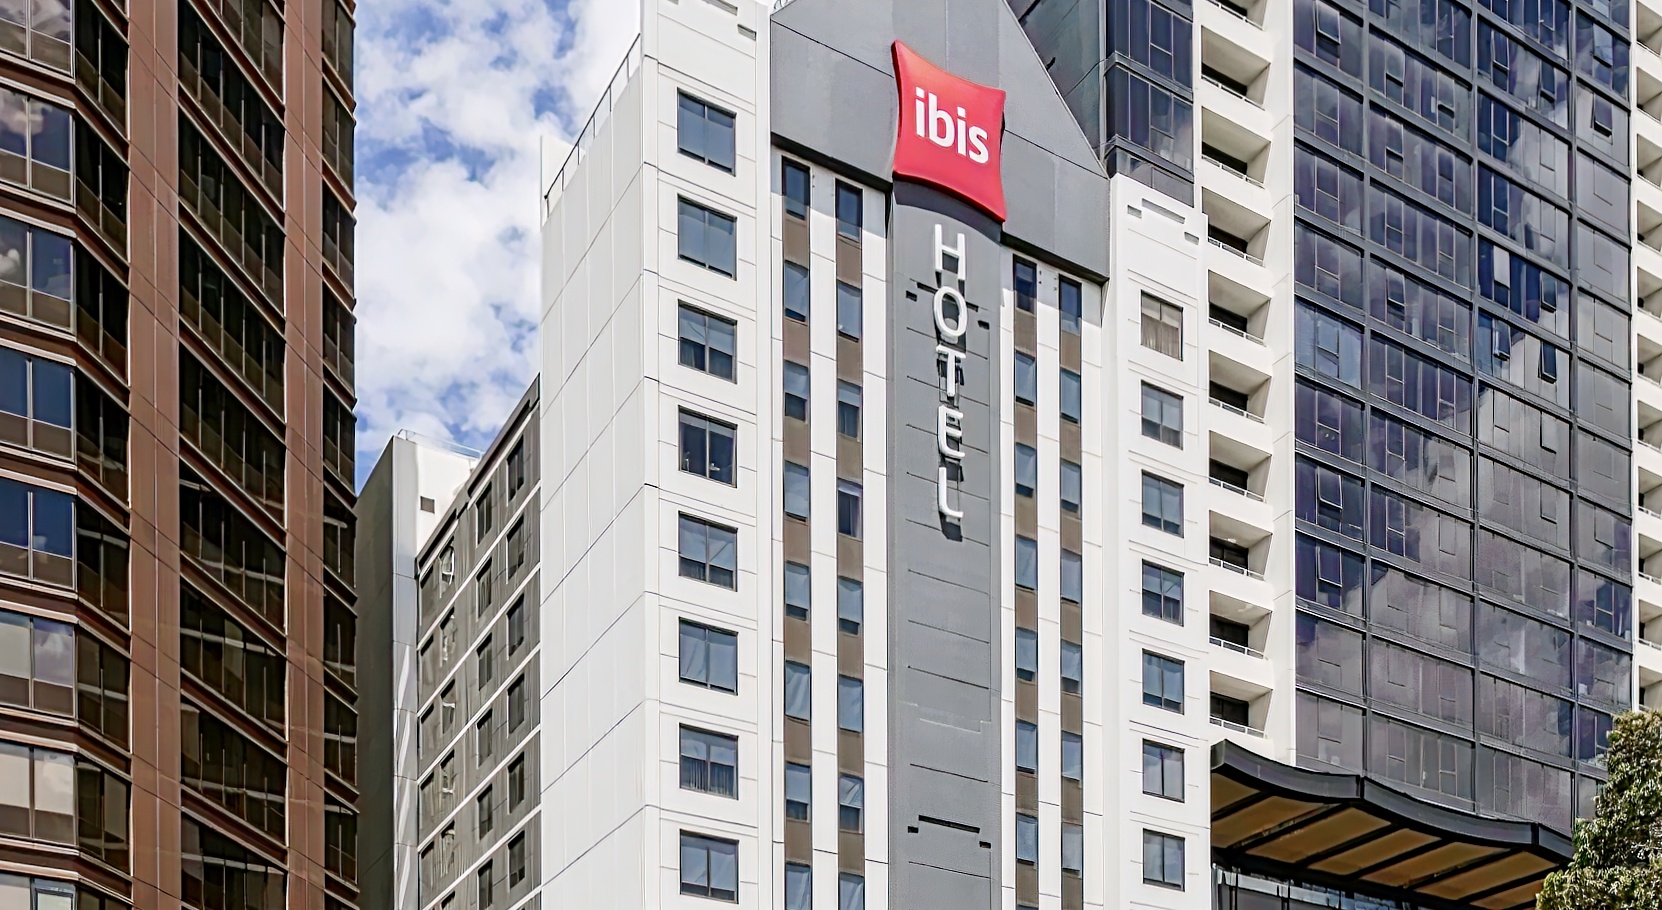 ibis Melbourne Hotel & Apartments